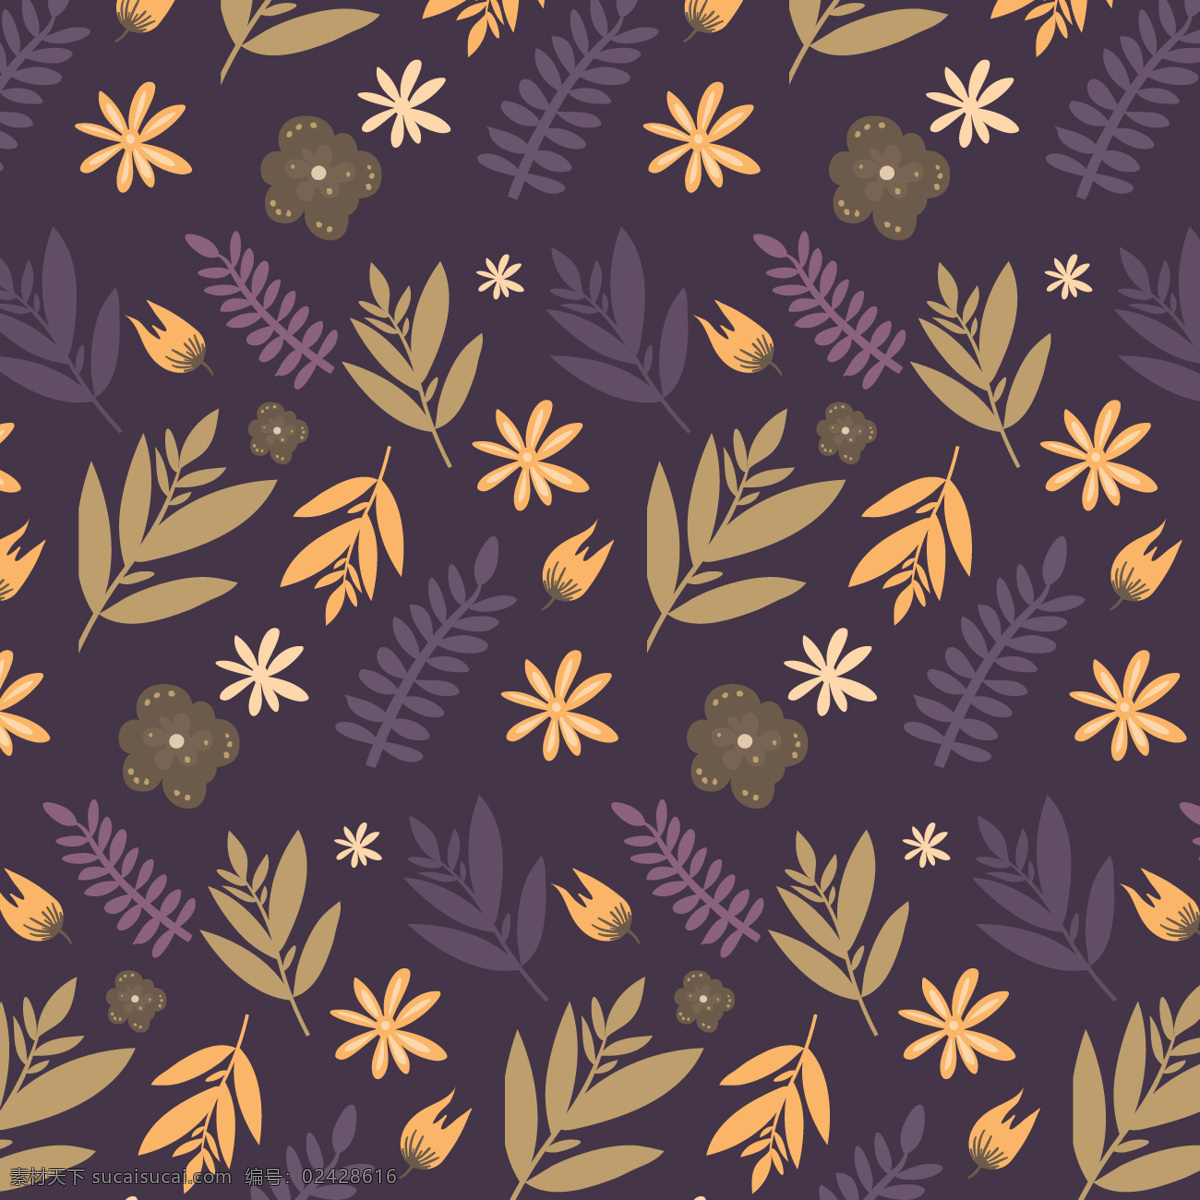 五颜六色 树叶 图案 葡萄 花 手 叶 秋 手画 图形 图形设计 丰富多彩 植物 秋季 绘画 复古花卉 花卉 黑色